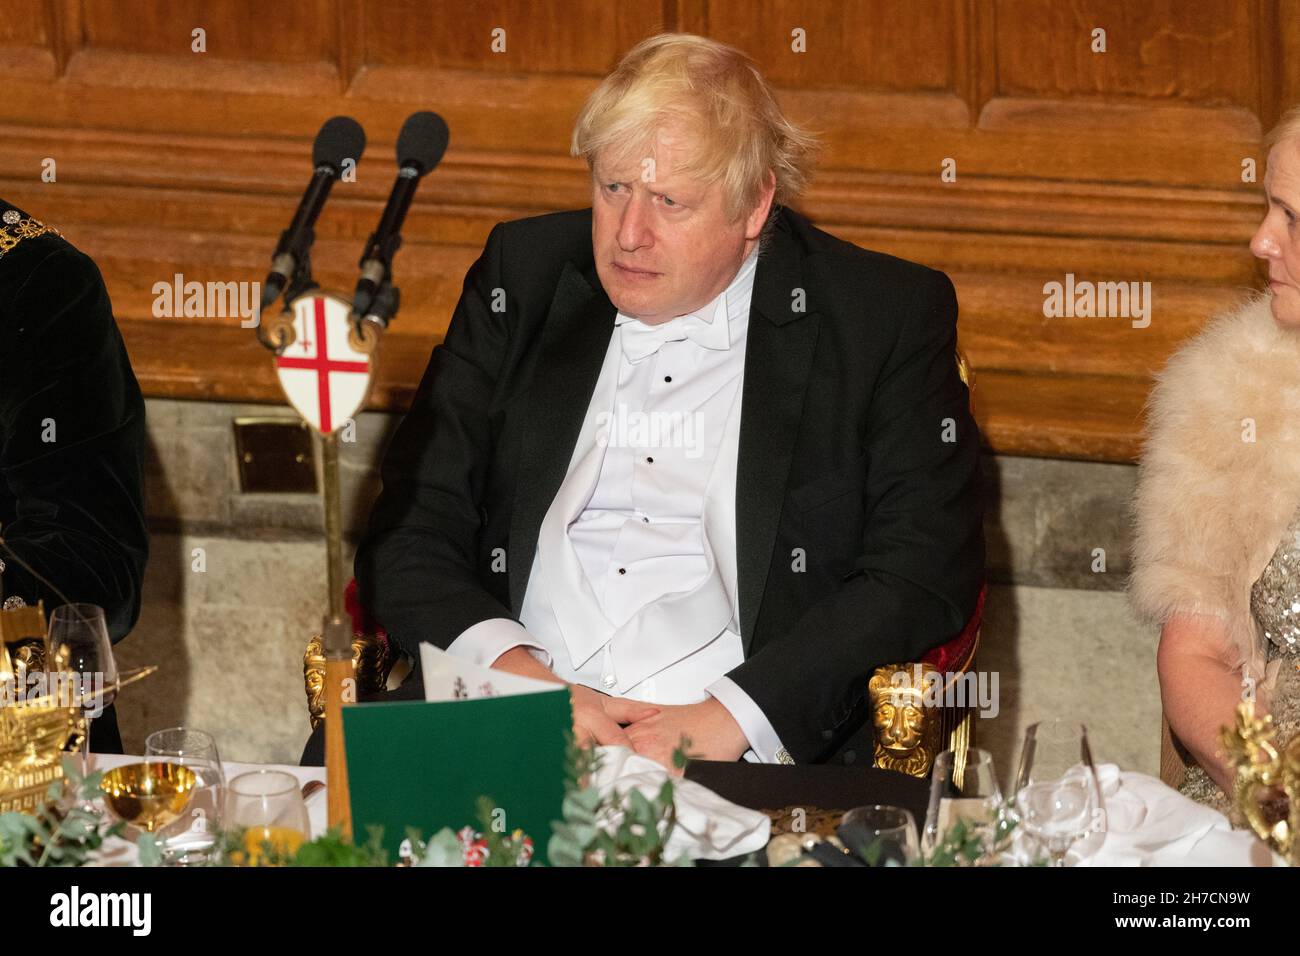 15/11/2021 Londra, Regno Unito. Il primo ministro britannico Boris Johnson partecipa al banchetto annuale dei sindaci di Lord a Guildhall. Foto di Ray Tang. Foto Stock